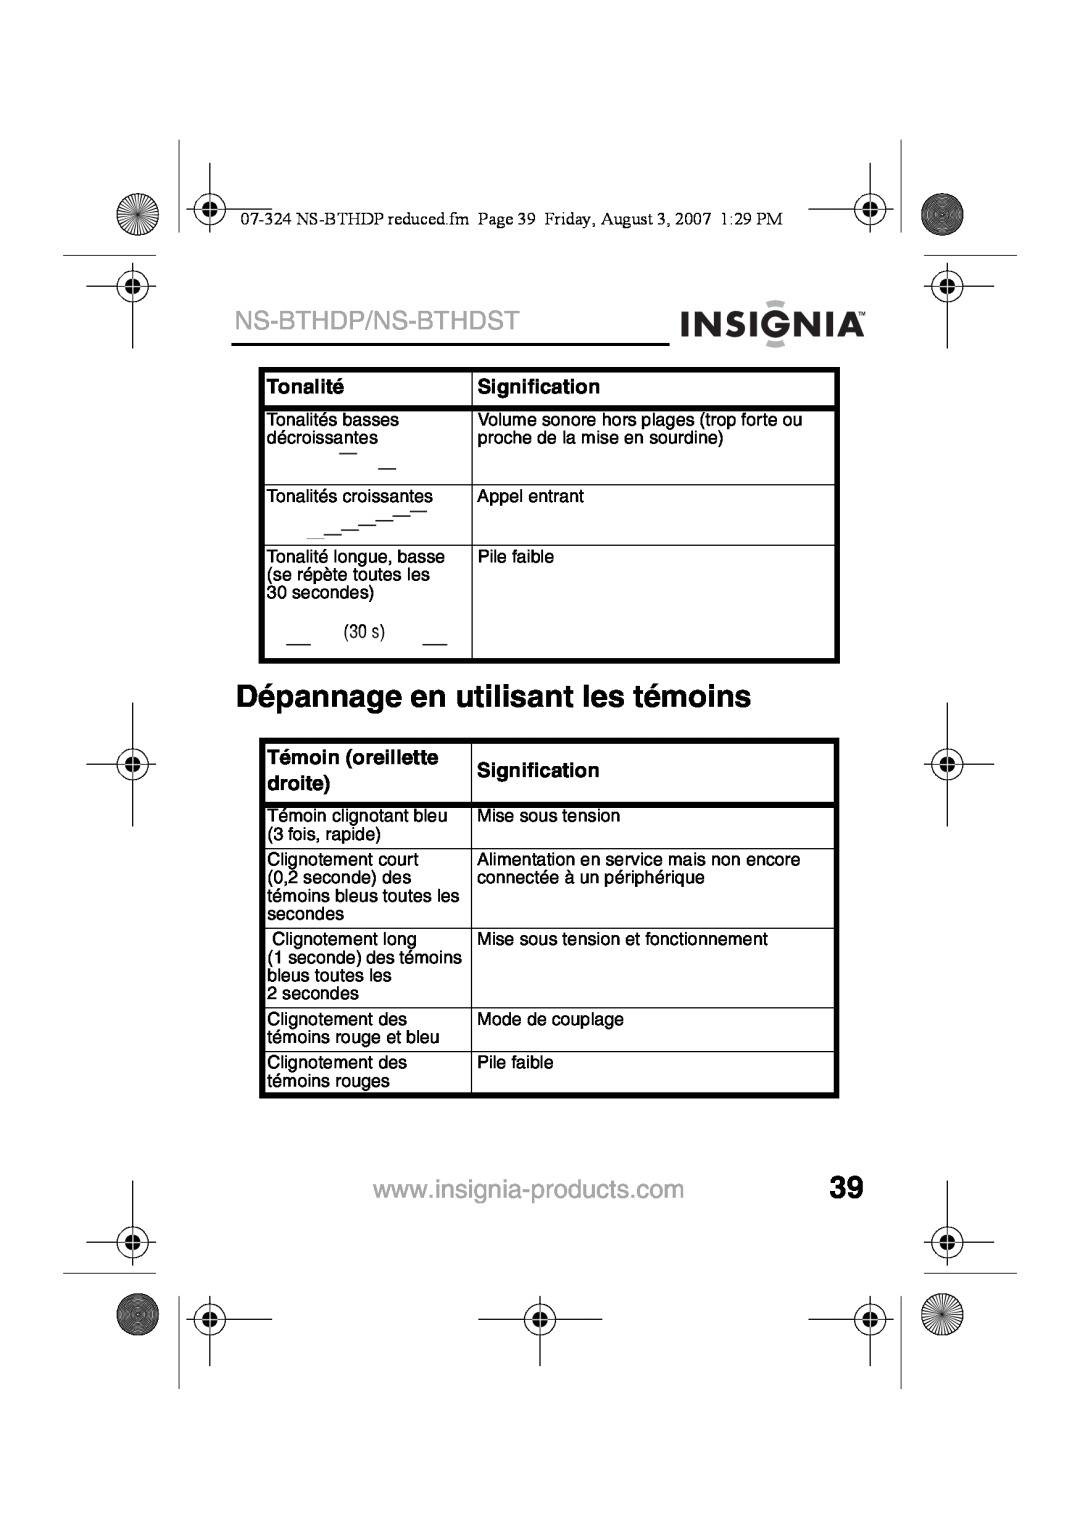 Insignia NS-BTHDST Dépannage en utilisant les témoins, Ns-Bthdp/Ns-Bthdst, Tonalité, Signification, Témoin oreillette 